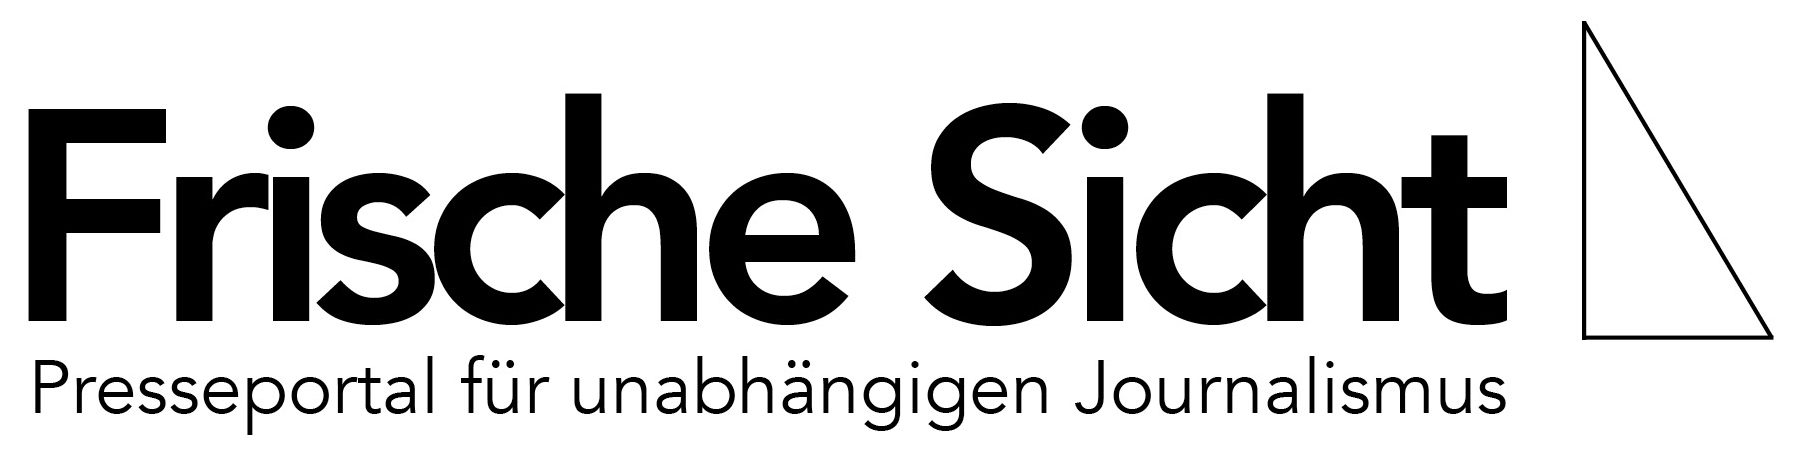 frischesicht.de – Presseportal für unabhängigen Journalismus